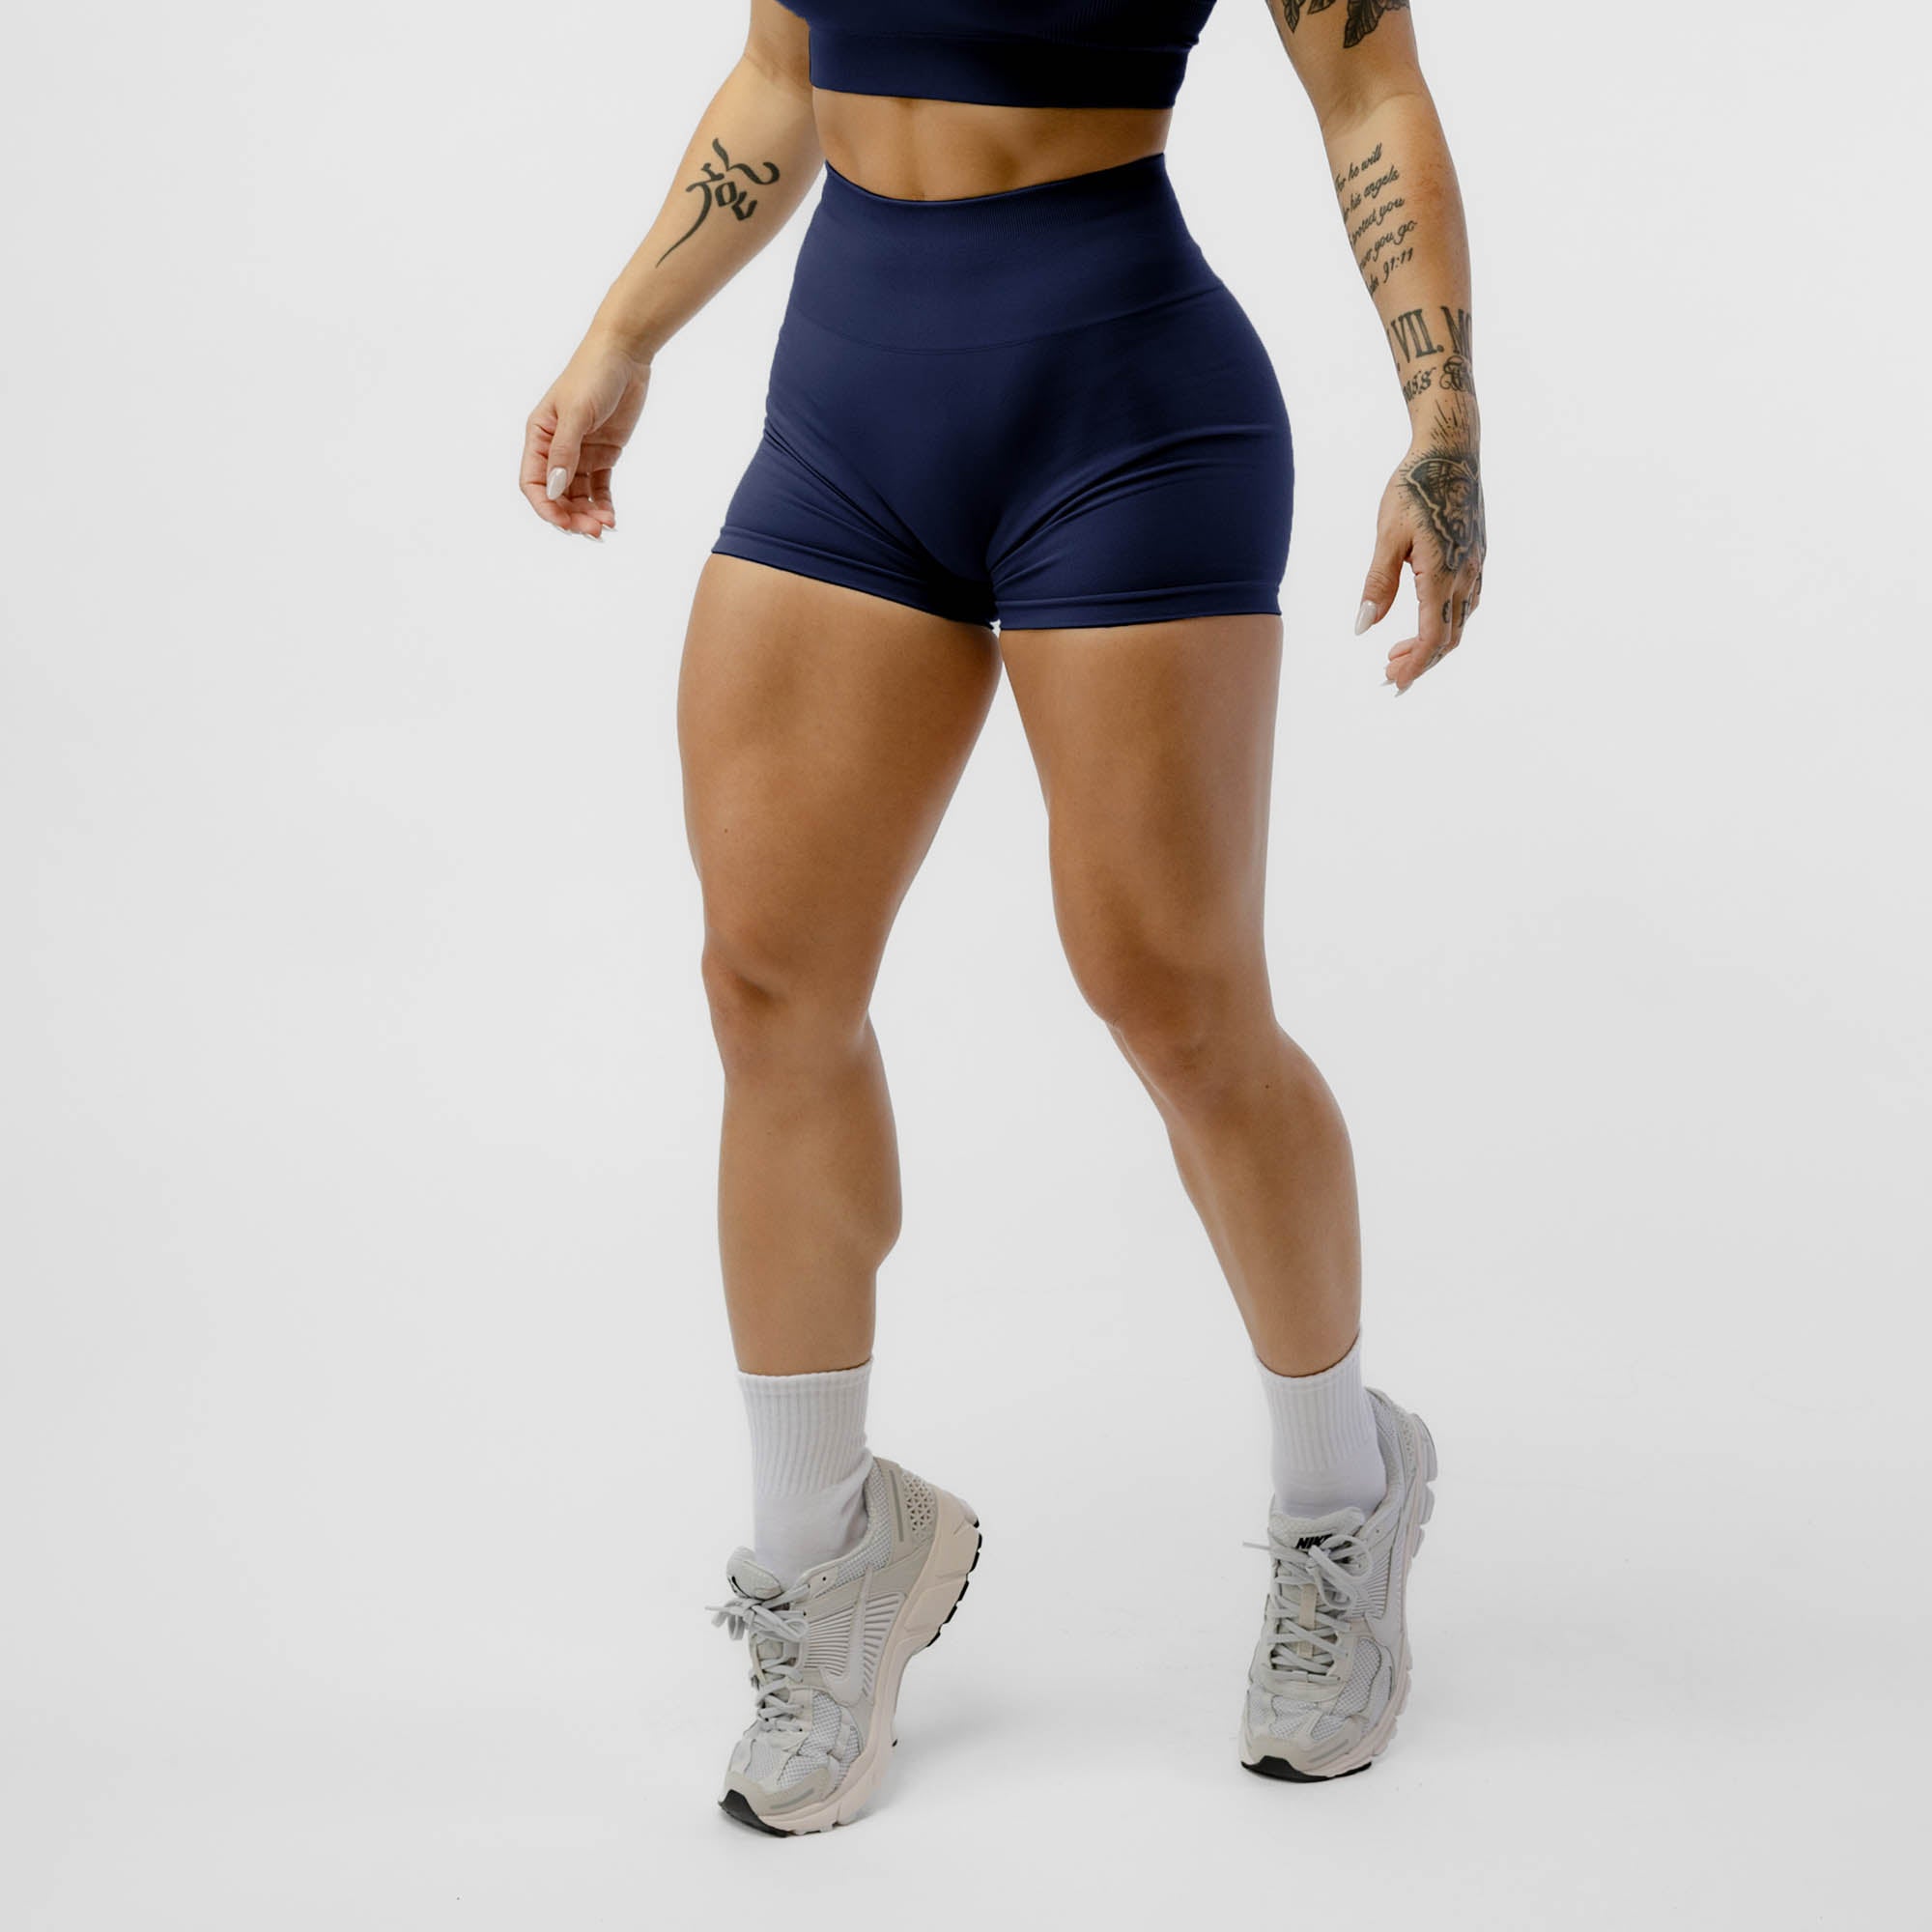 Women's Gym Shorts, Sports & Workout Shorts